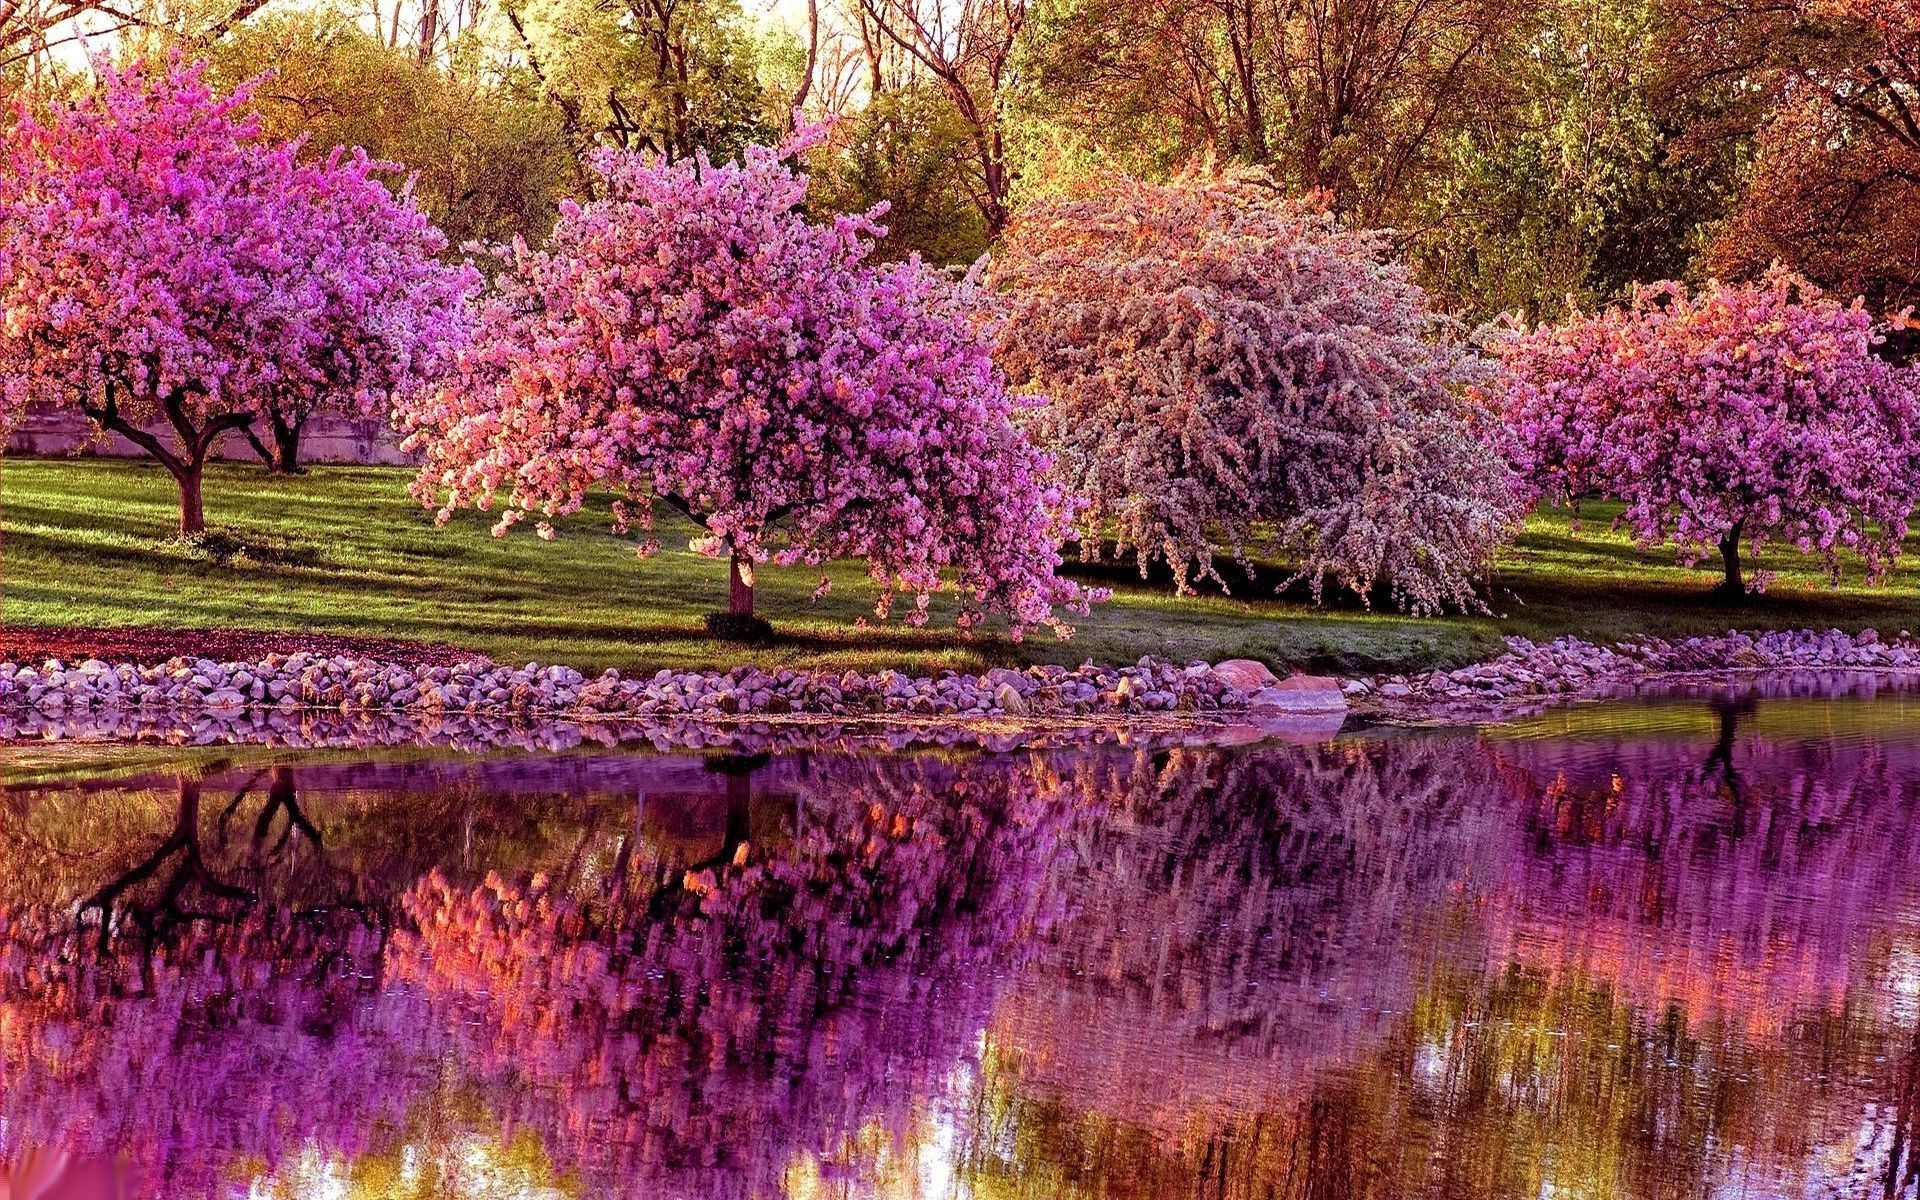 عکس درختان با پوشش شکوفه های زیبای بهاری